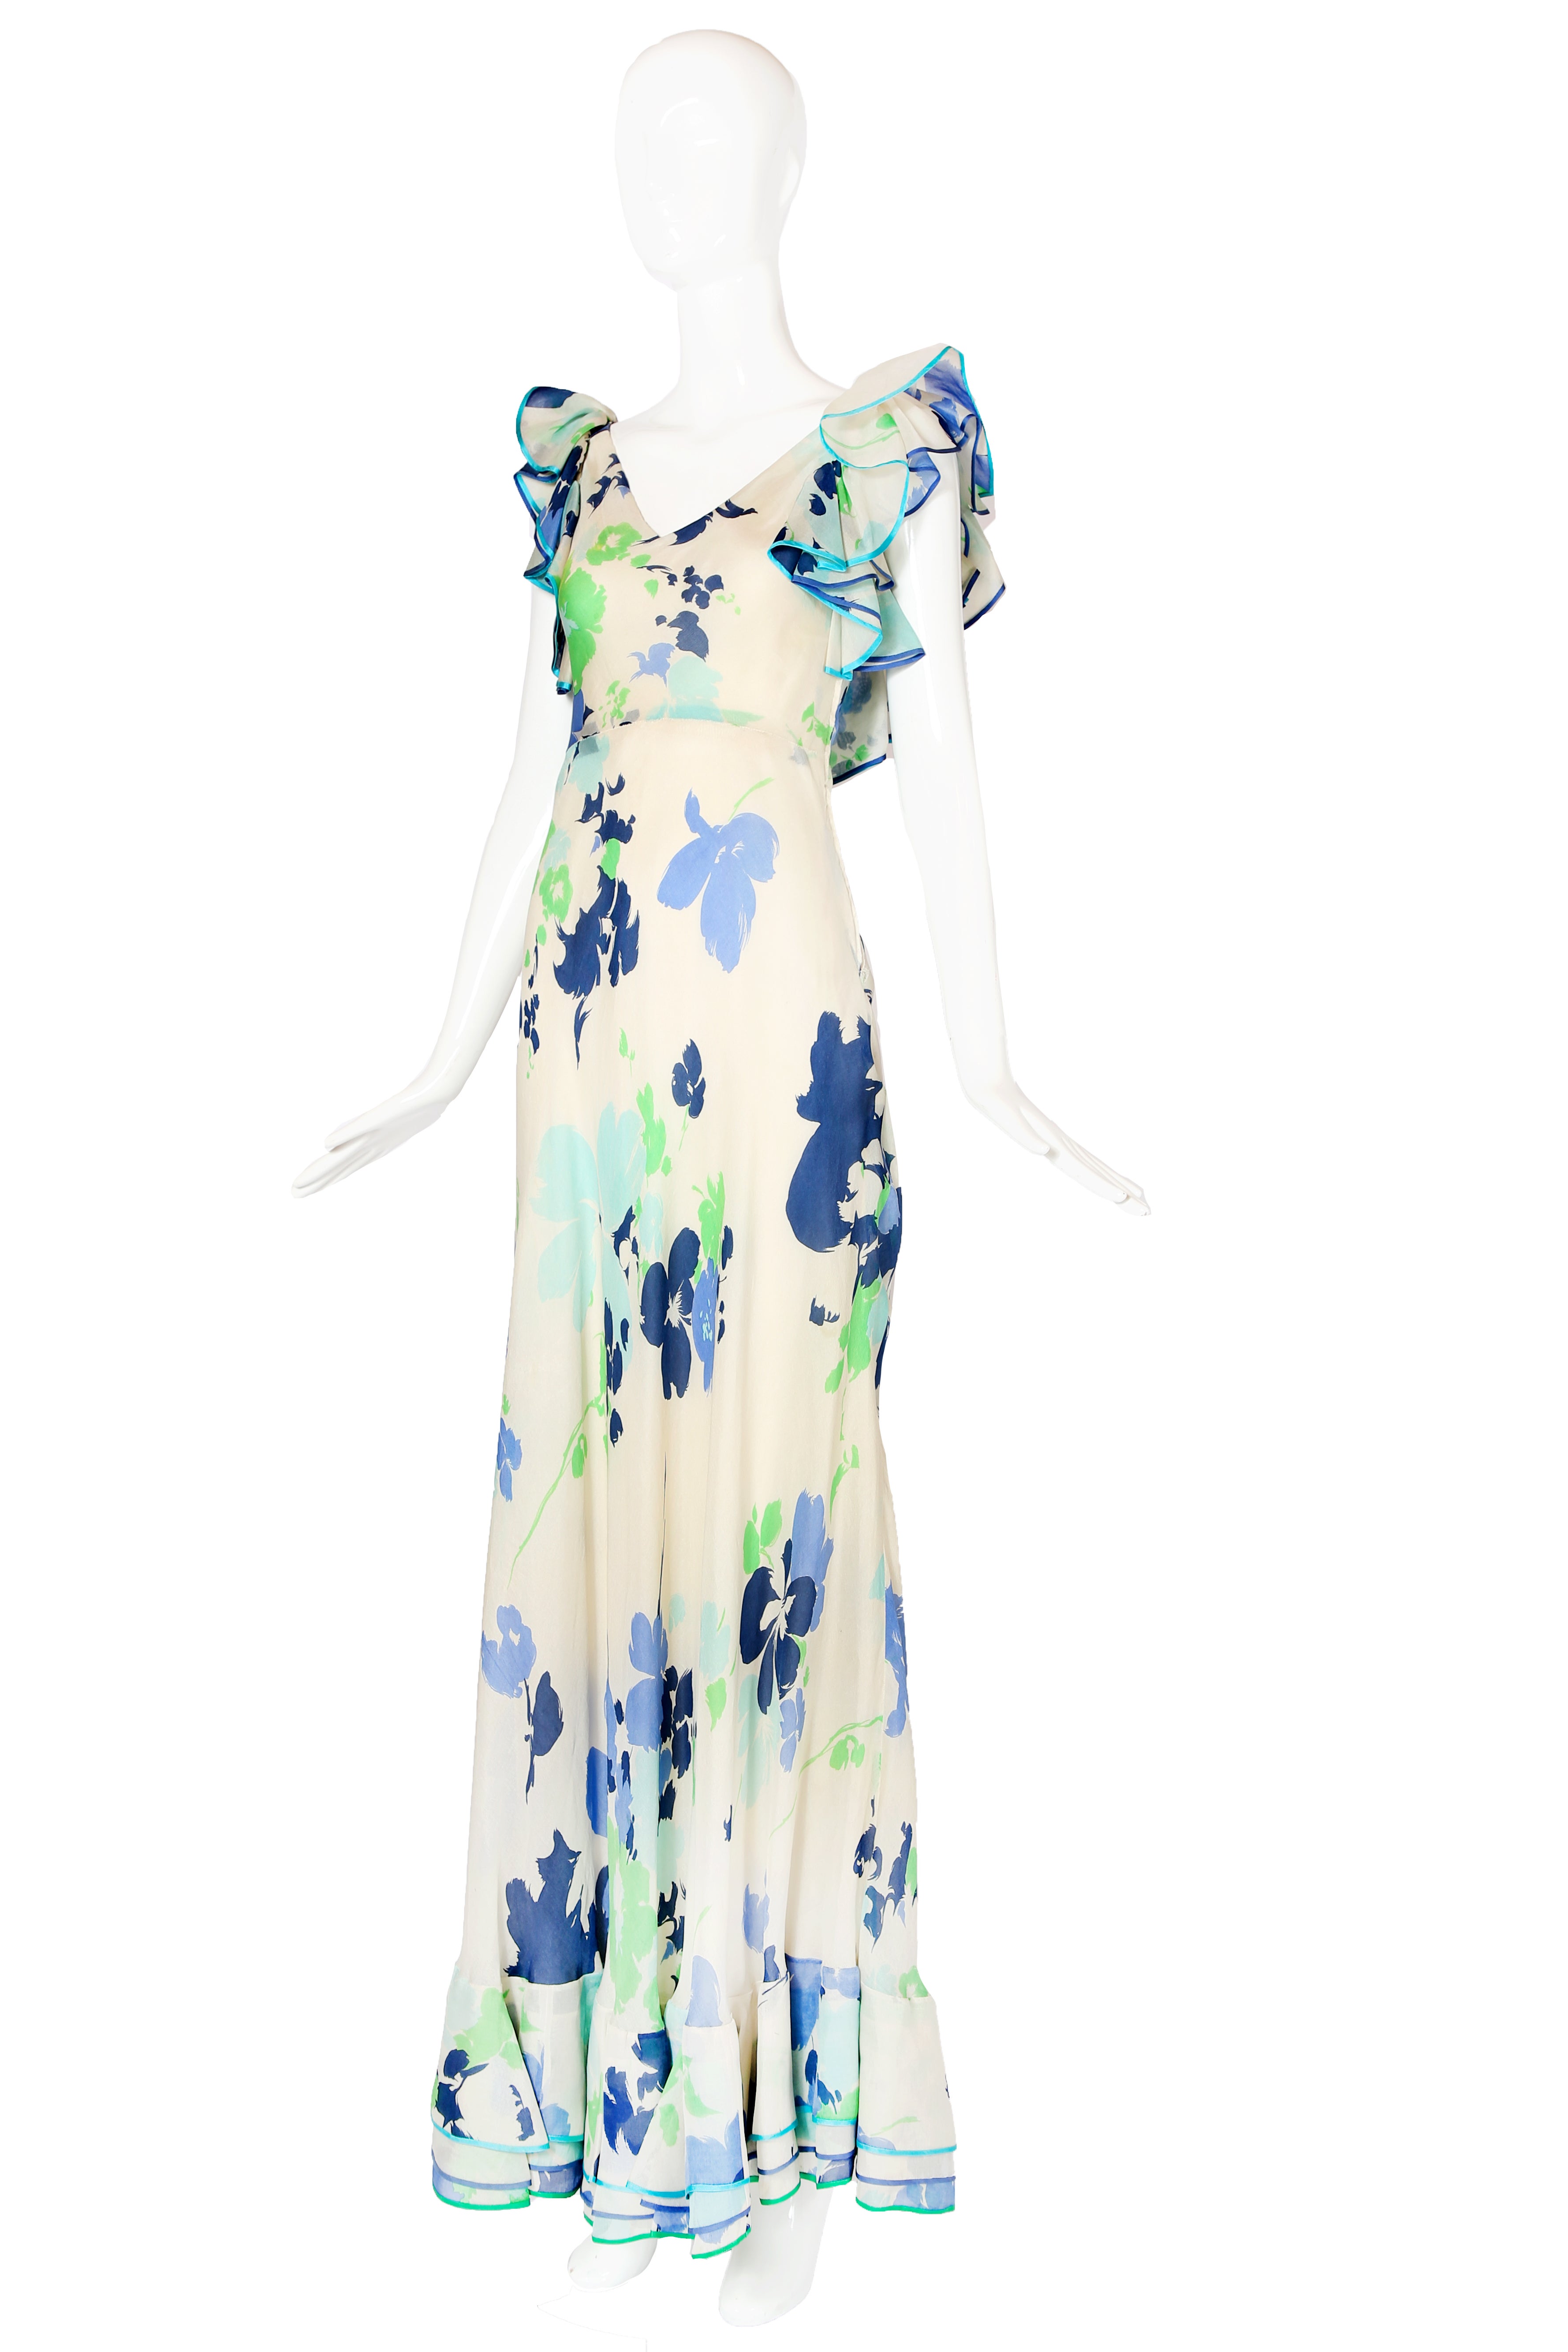 Début des années 1960, Pierre Balmain No. 158143, robe haute couture en organza de soie à imprimé floral avec des volants multicouches à l'encolure et à l'ourlet. L'intérieur est doublé d'une doublure en soie et les volants sont bordés de soie